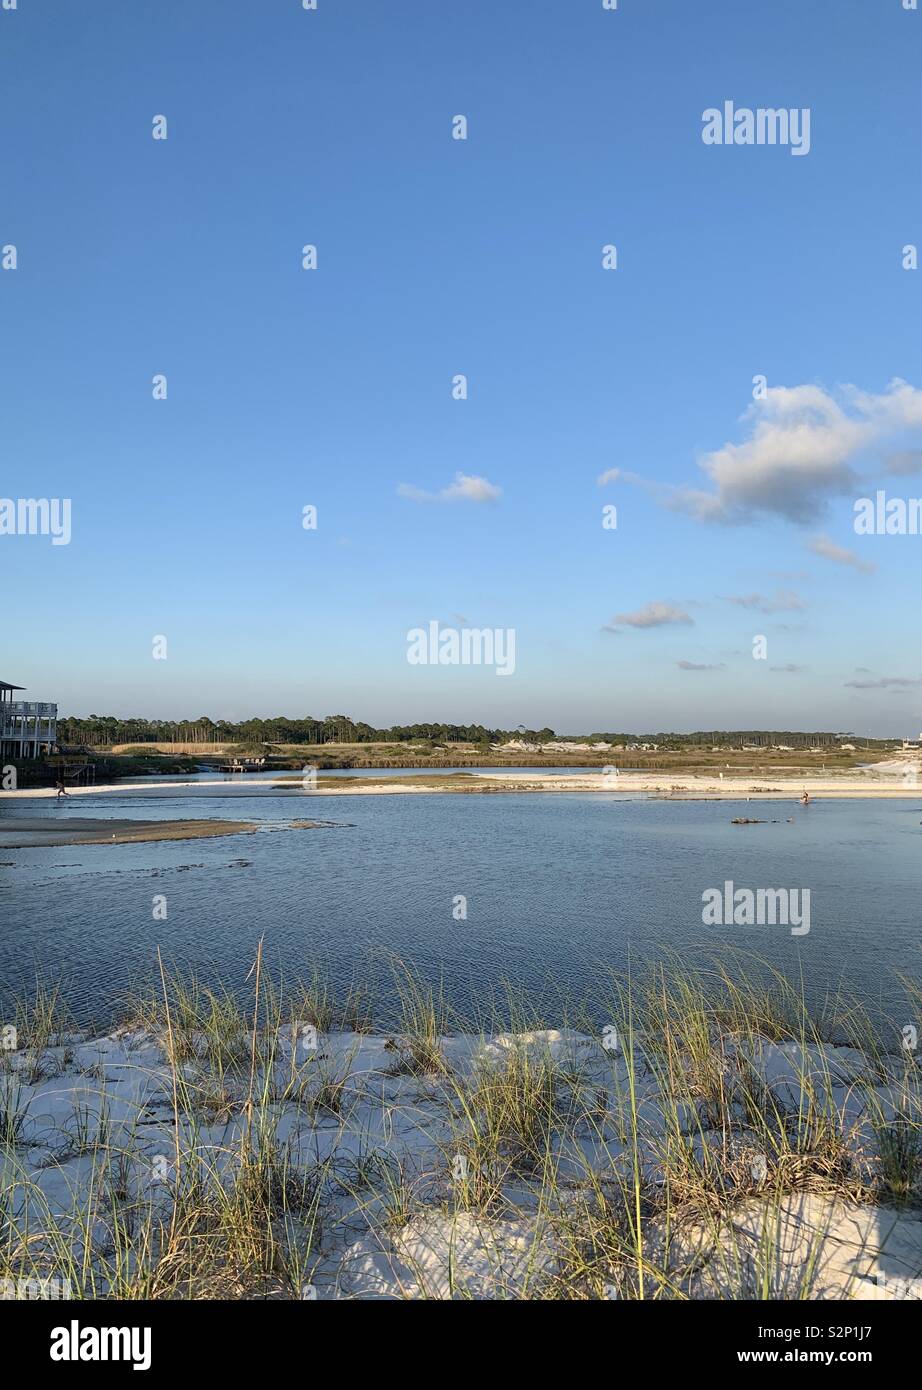 Lac de la côte avec de l'eau et paysage de dunes, de sable blanc, vue panoramique, rare et unique écosystème Banque D'Images